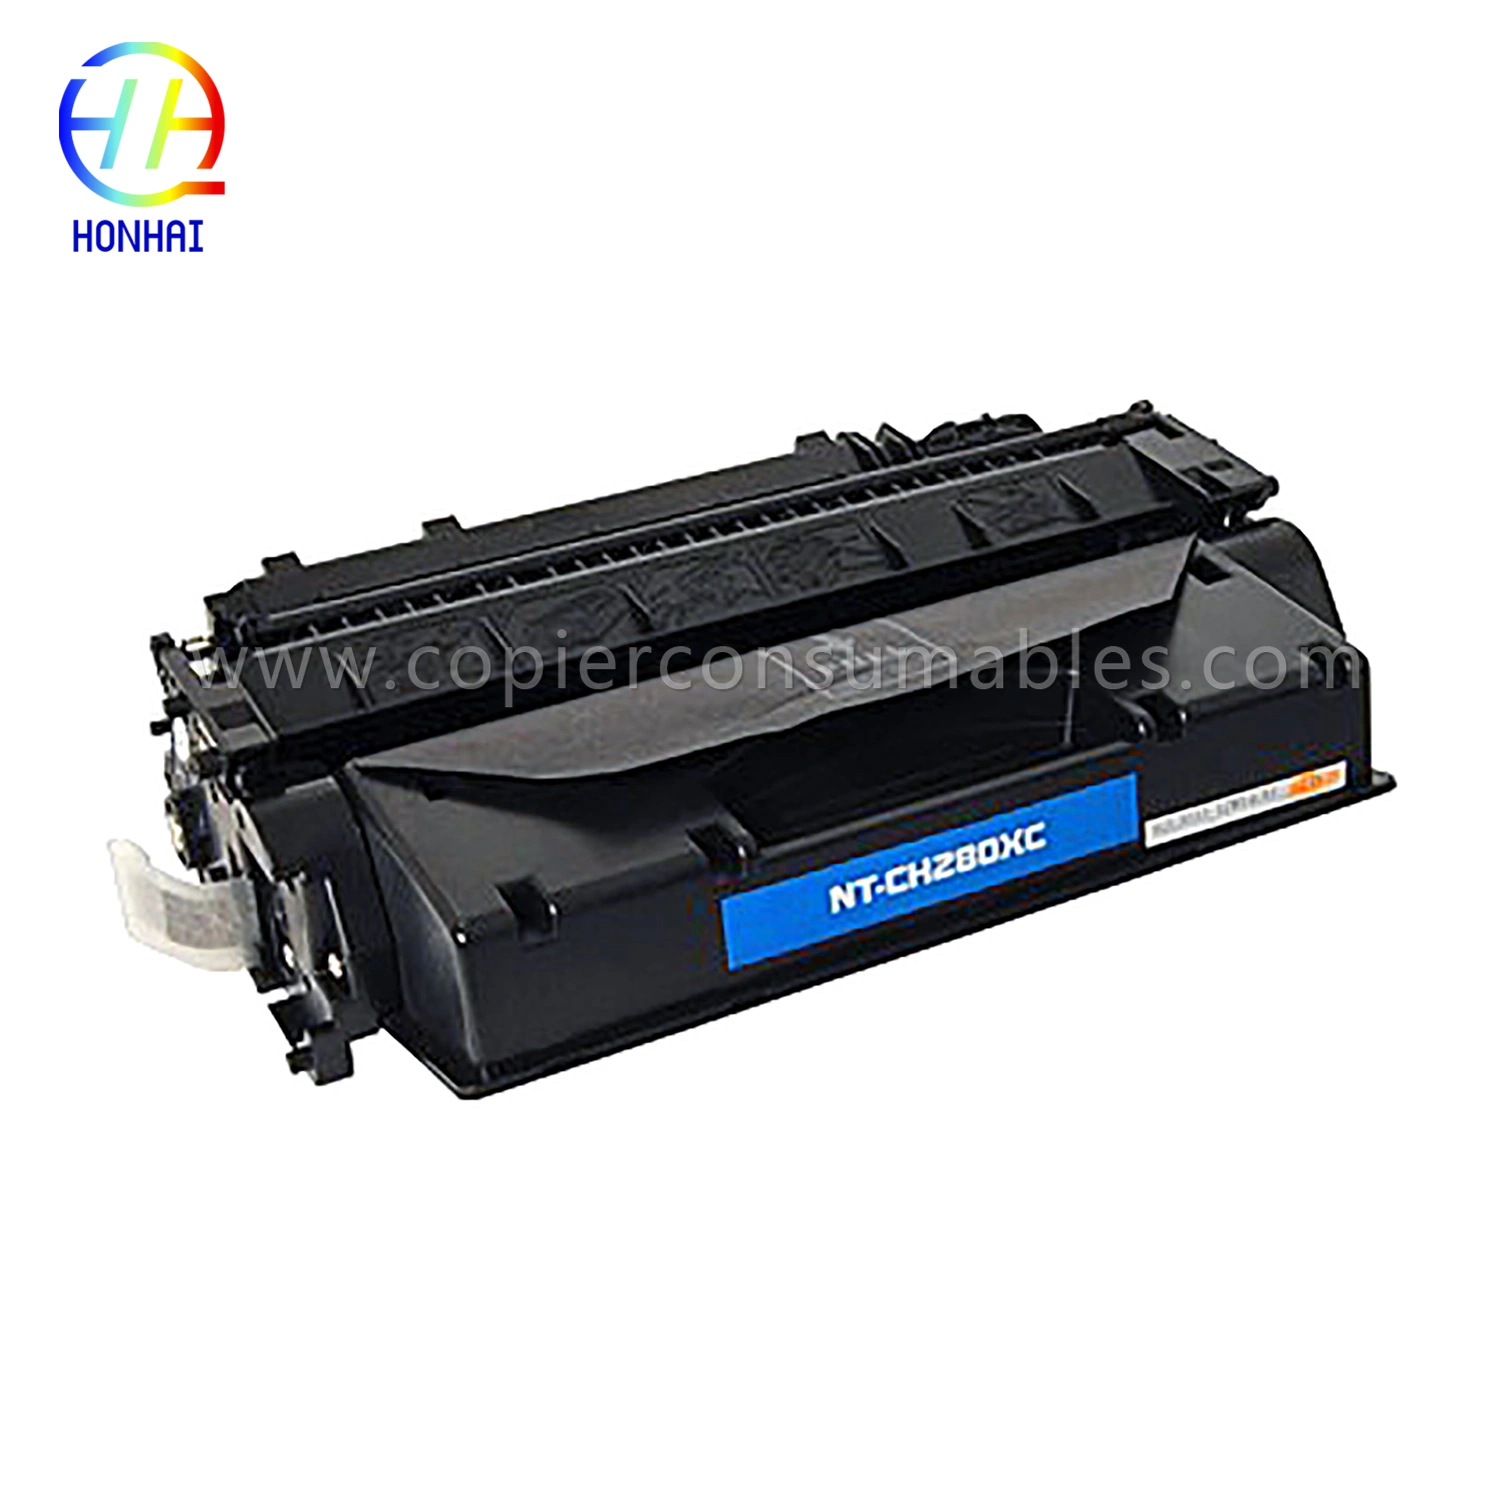 Toner Cartridge for HP Laserjet PRO 400 M401n M401dne M425DN M401dw M401DN M425dw (80X CF280X)